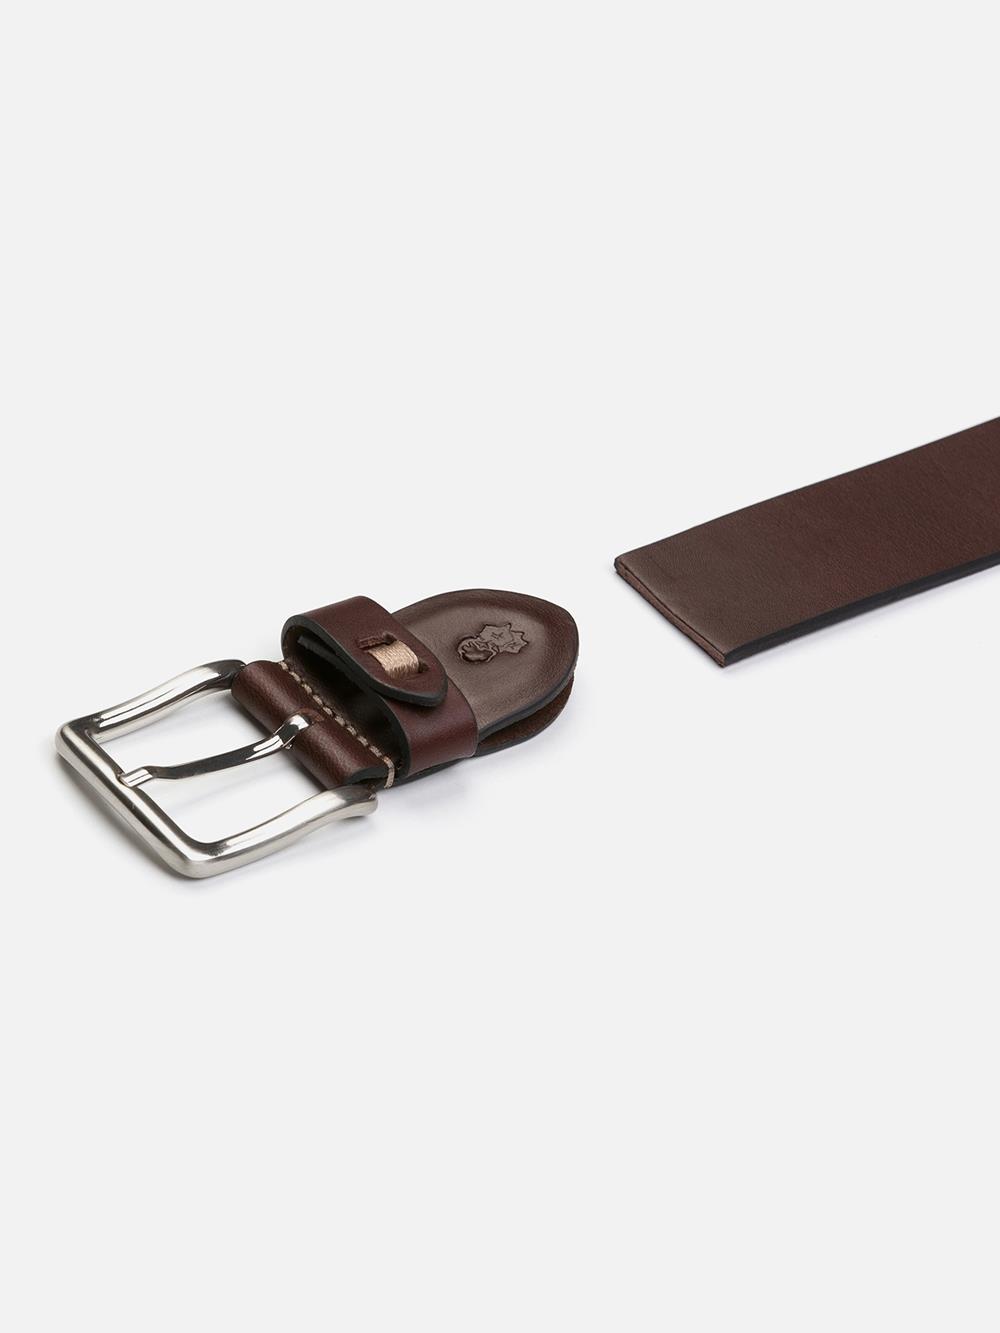 Cinturón de cuero chocolate patinado